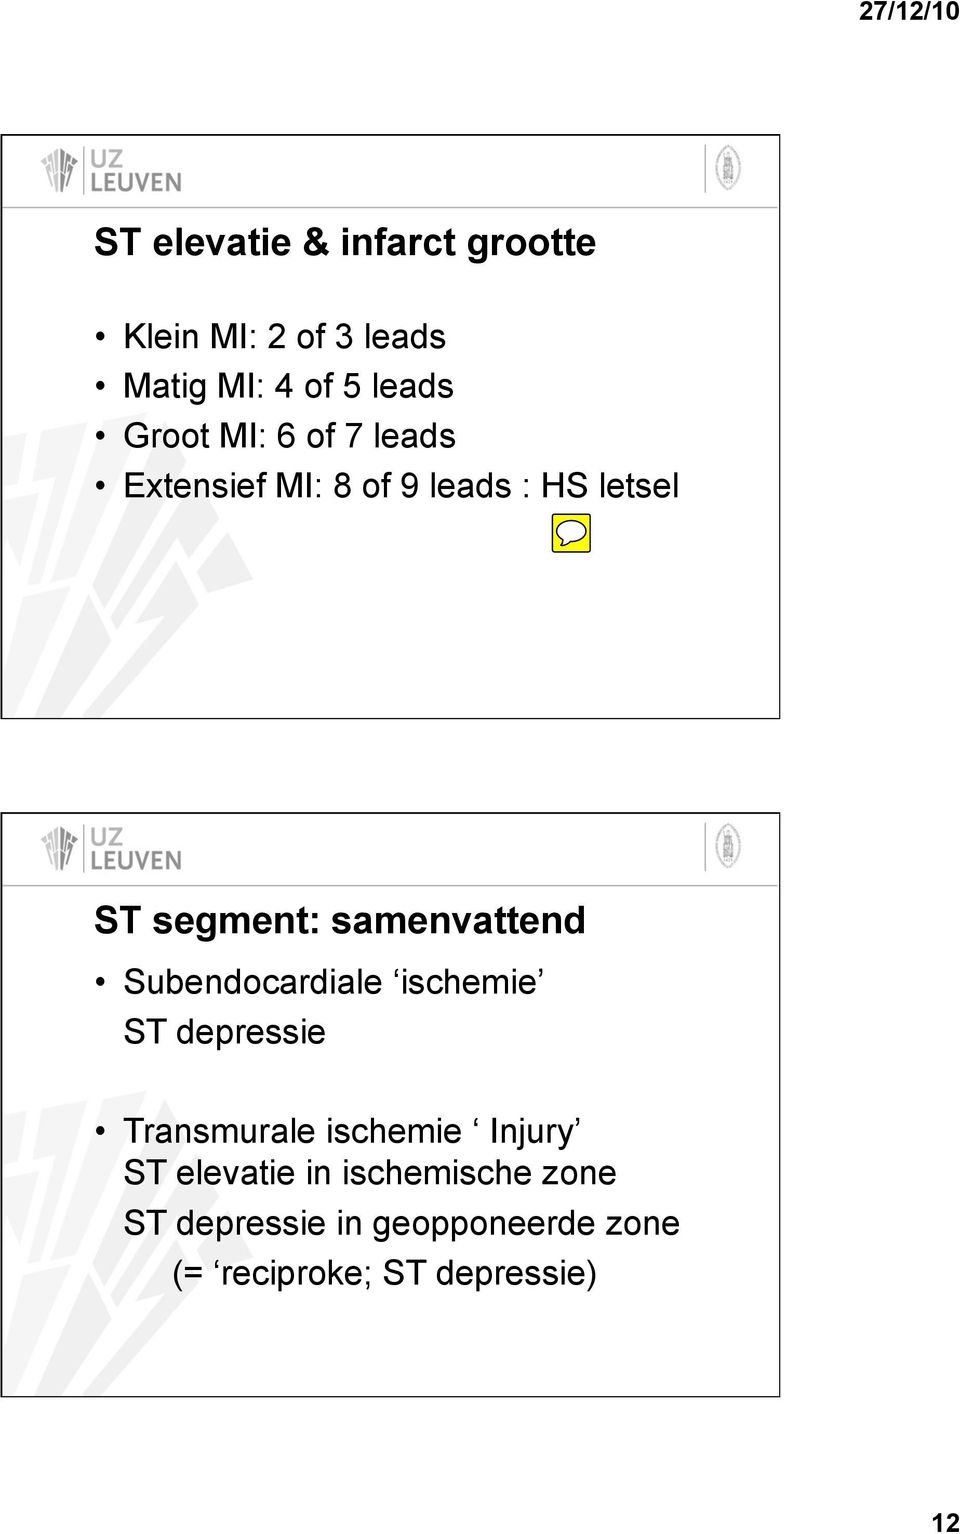 Subendocardiale ischemie ST depressie Transmurale ischemie Injury ST elevatie in